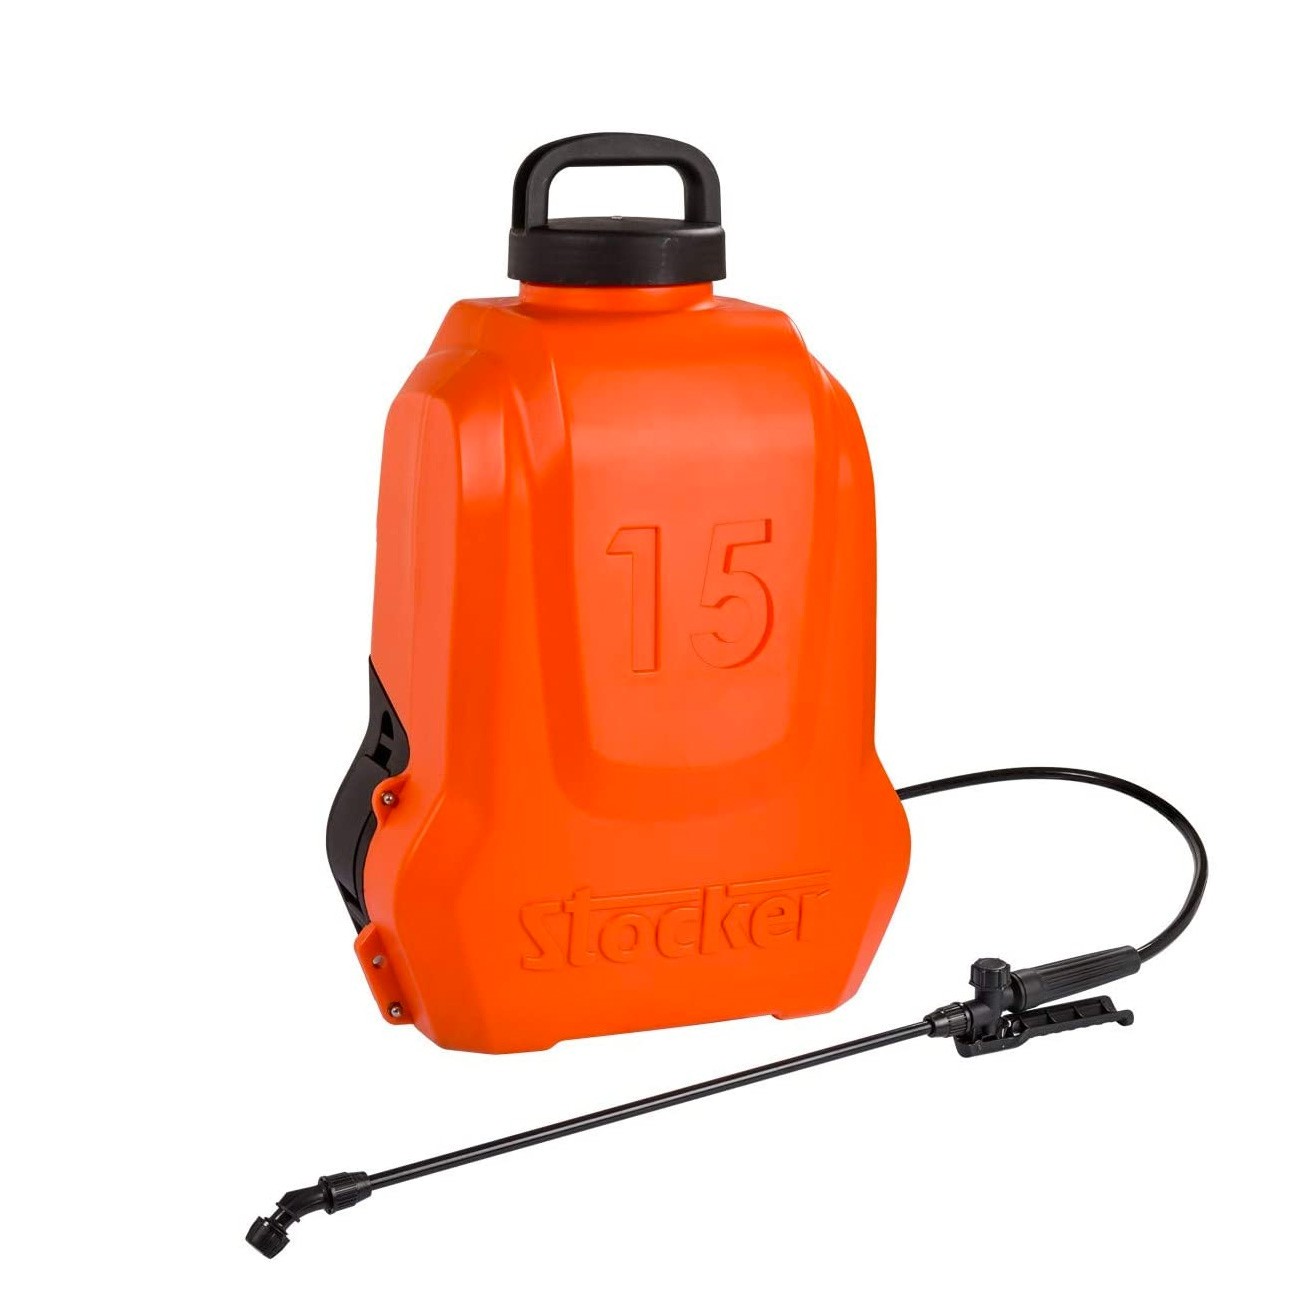 Pompa irroratrice a batteria Stocker 15 litri